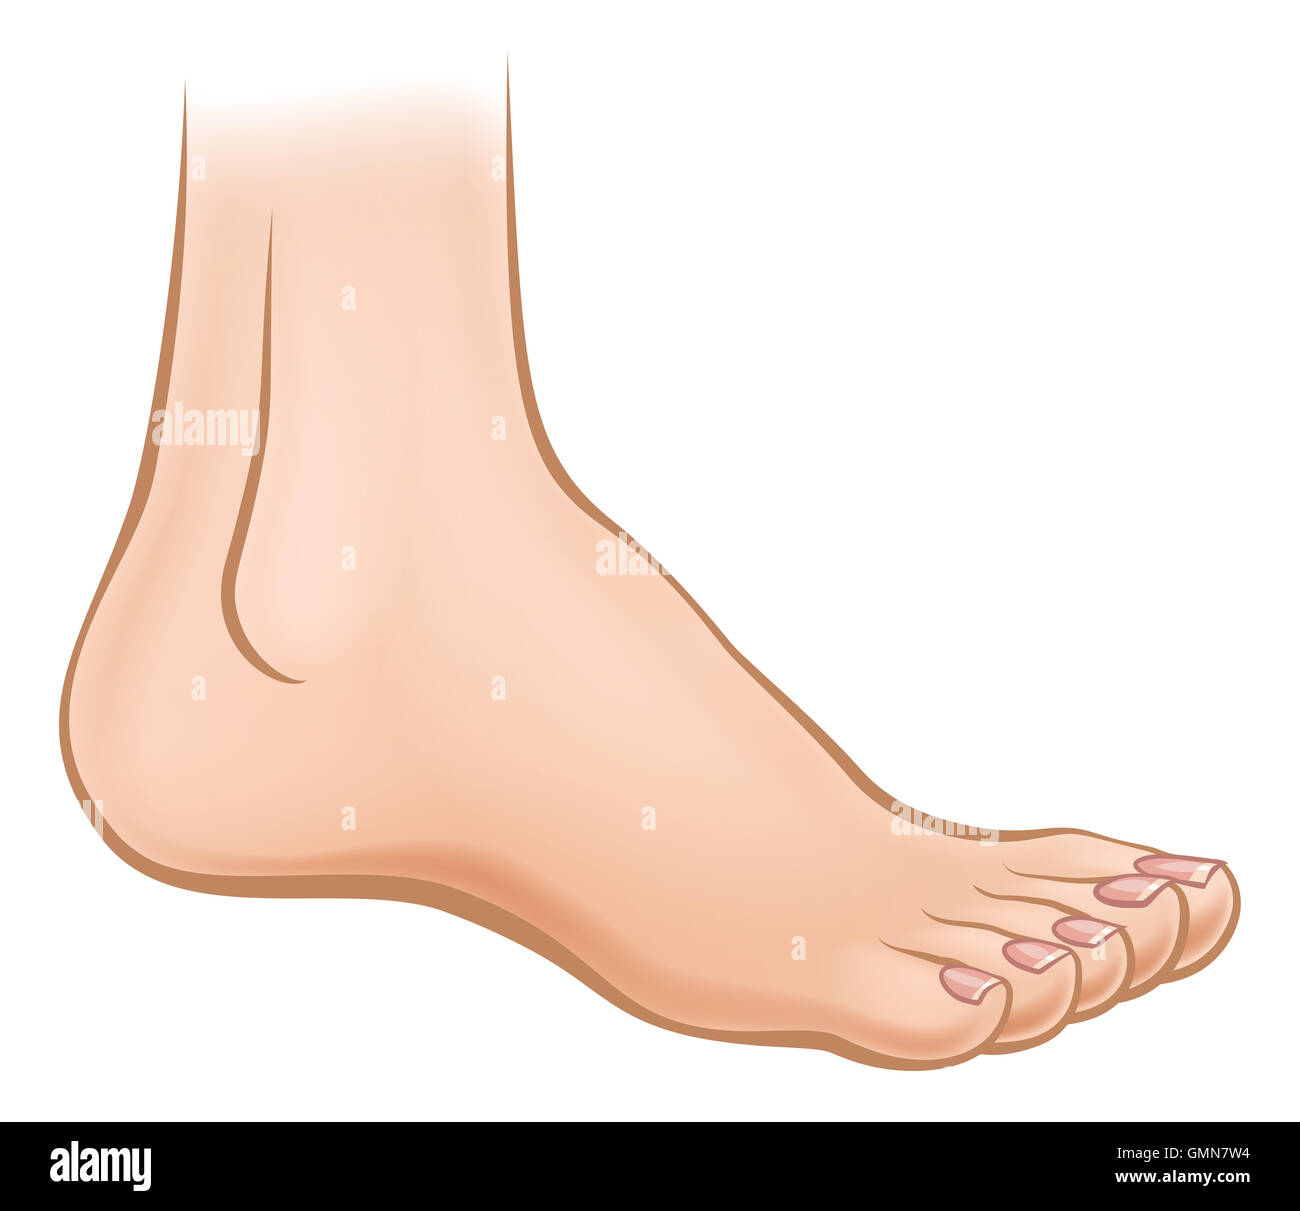 Una illustrazione di un cartoon piede umano Foto Stock